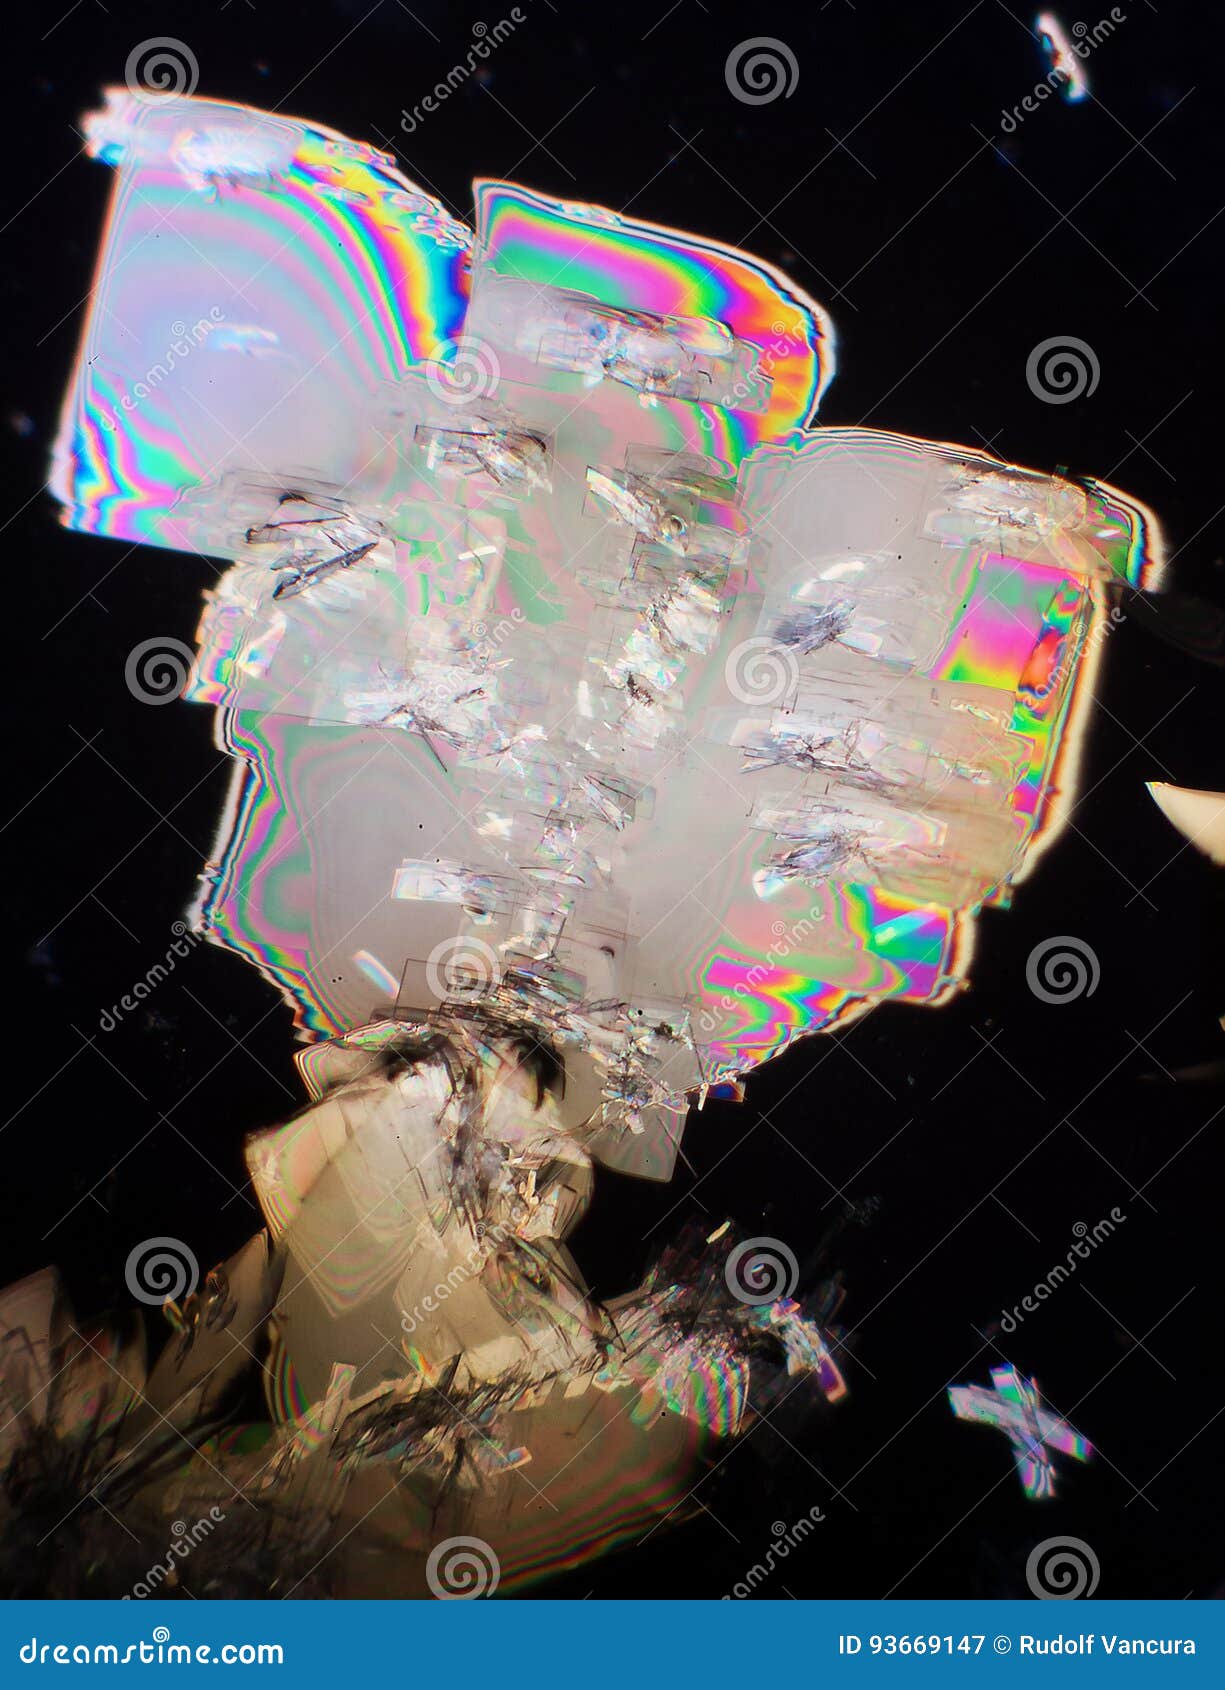 potassium alum crystals